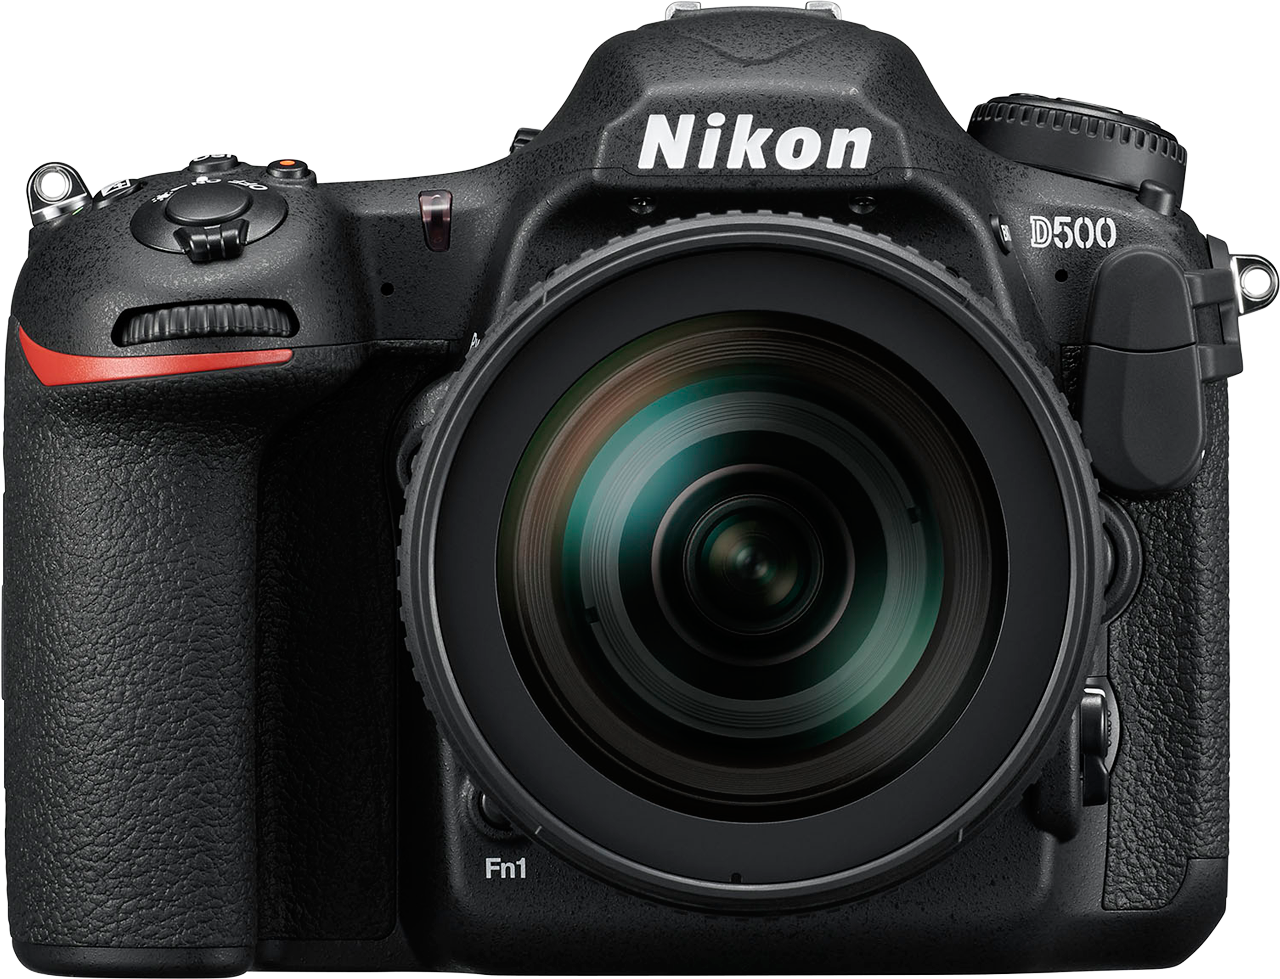 Nikon D500 korzysta z wbudowanej funkcji SnapBridge stworzonej z myślą o bezprzewodowej transmisji zdjęć